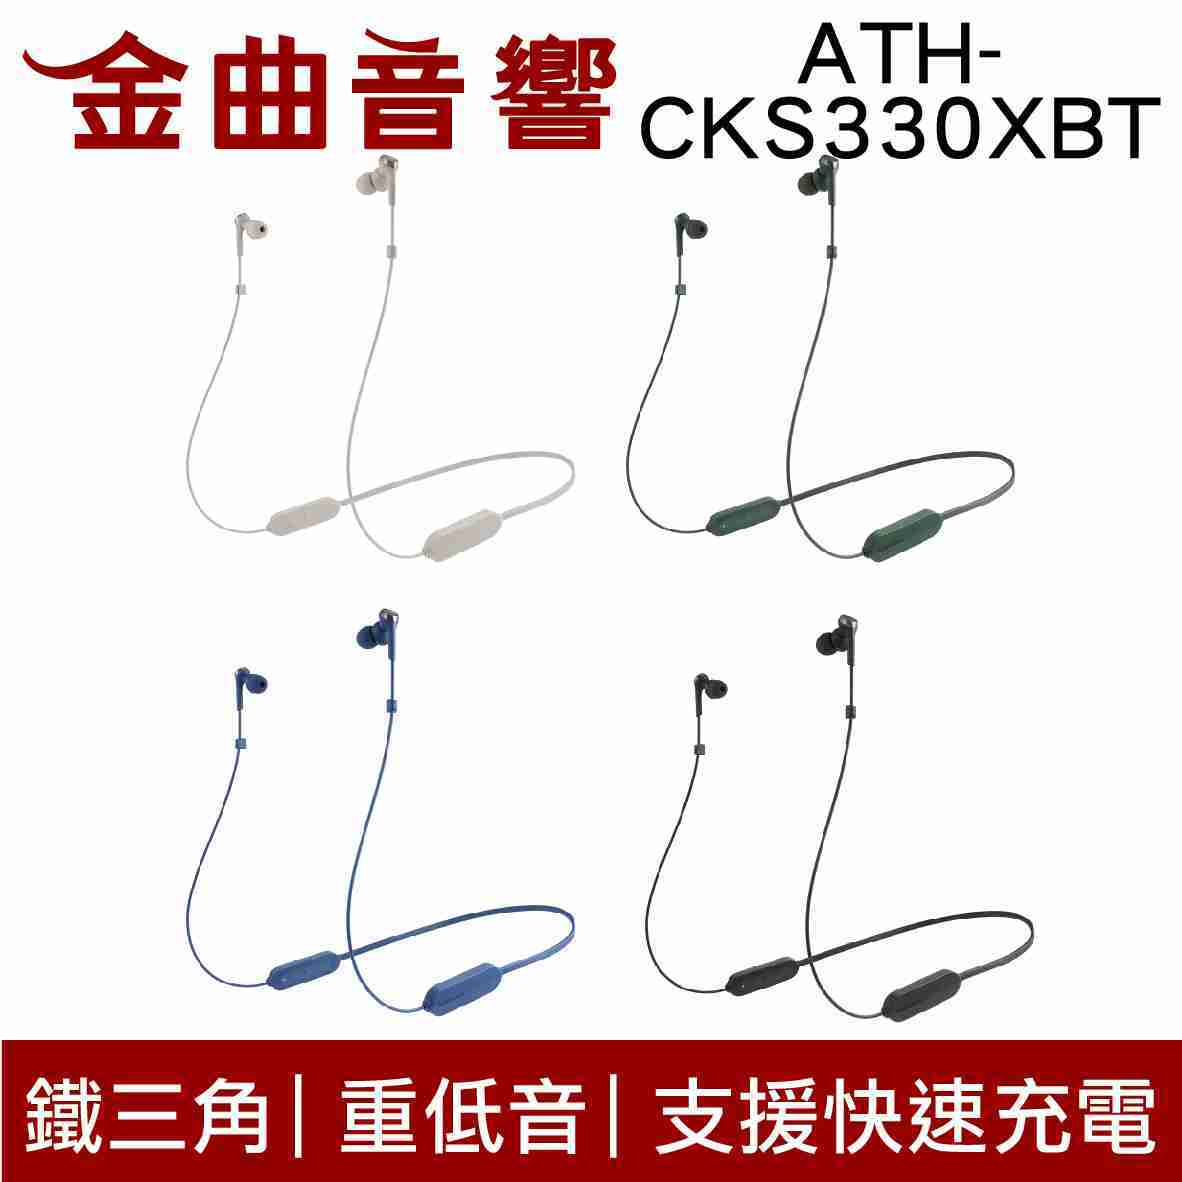 鐵三角 ATH-CKS330XBT 黑 低延遲 無線 藍芽 耳道式耳機 | 金曲音響